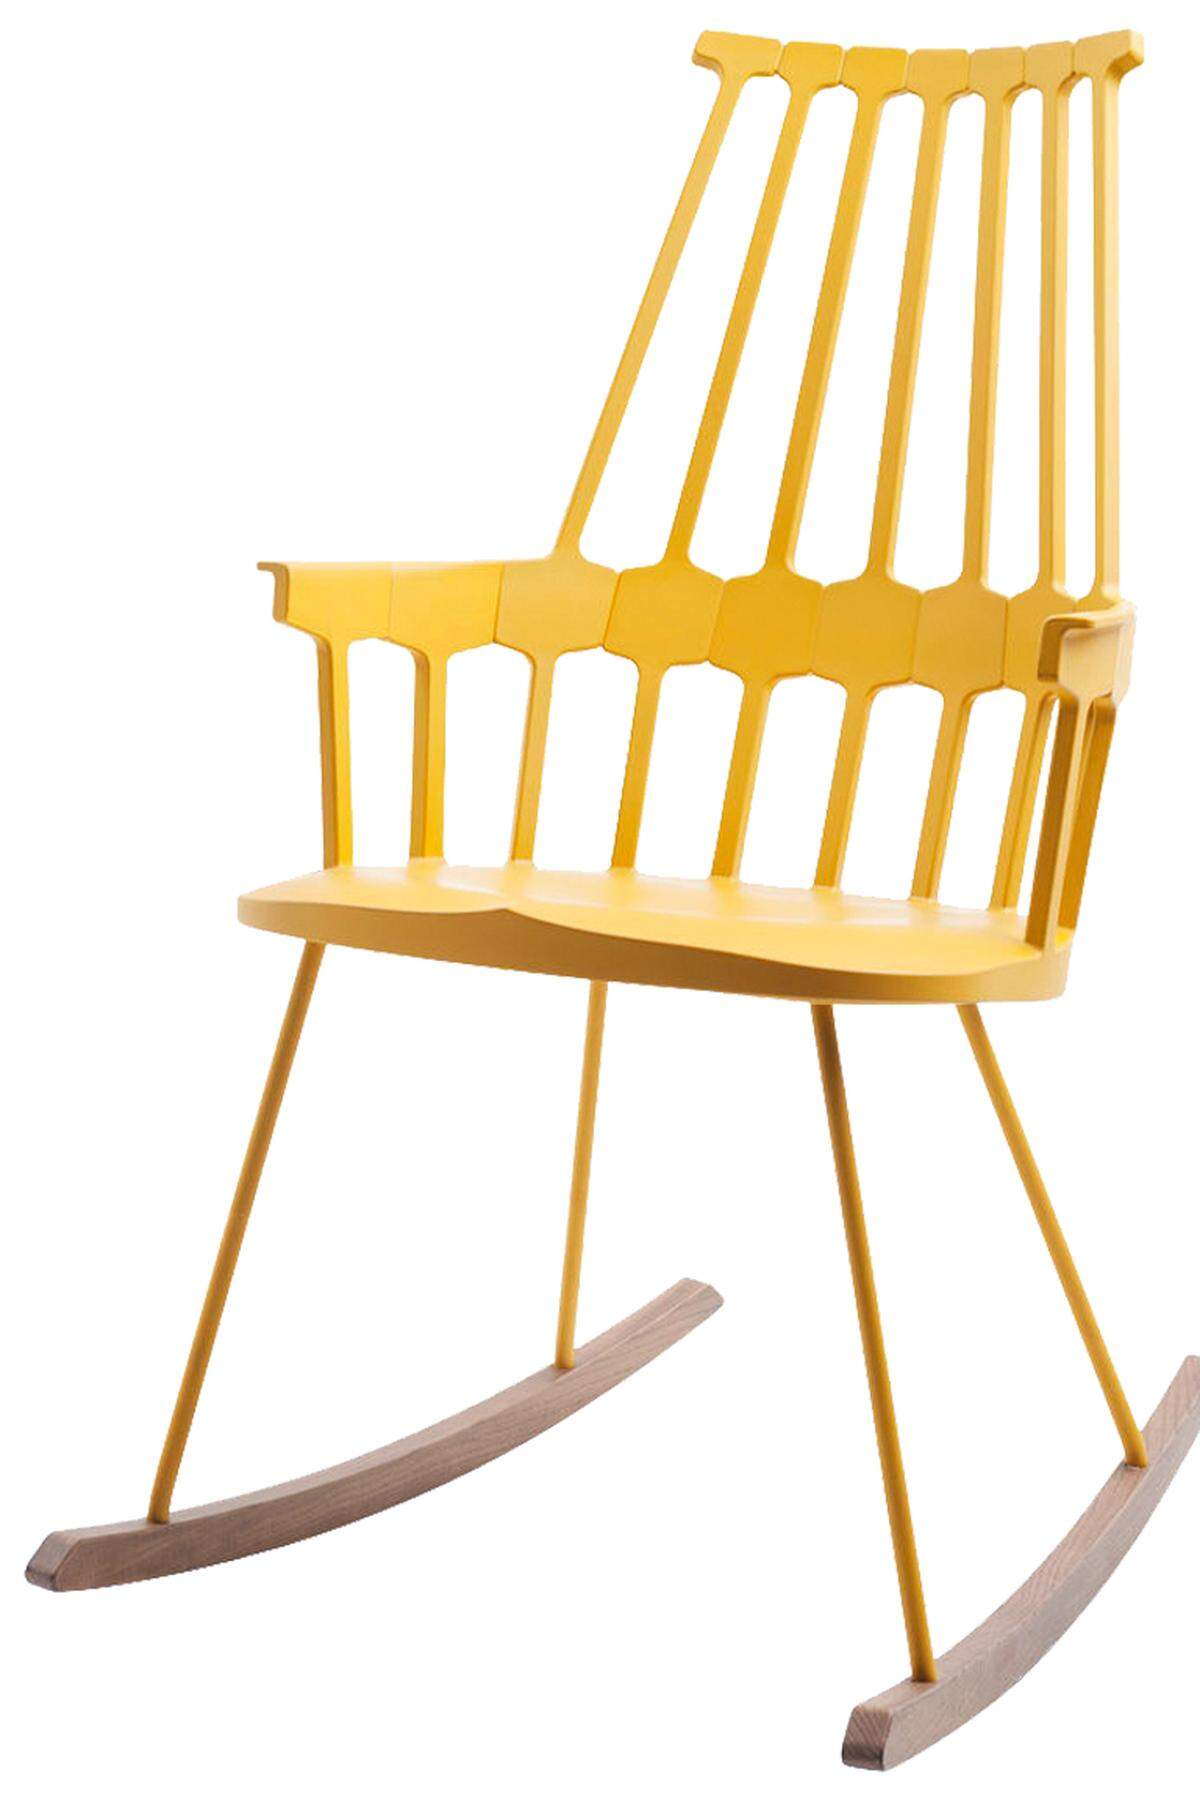 Für alle, die das Hin und Her mögen: Comback Rocking Chair von Kartell, designed von Patricia Urquiola. www.kartell.it